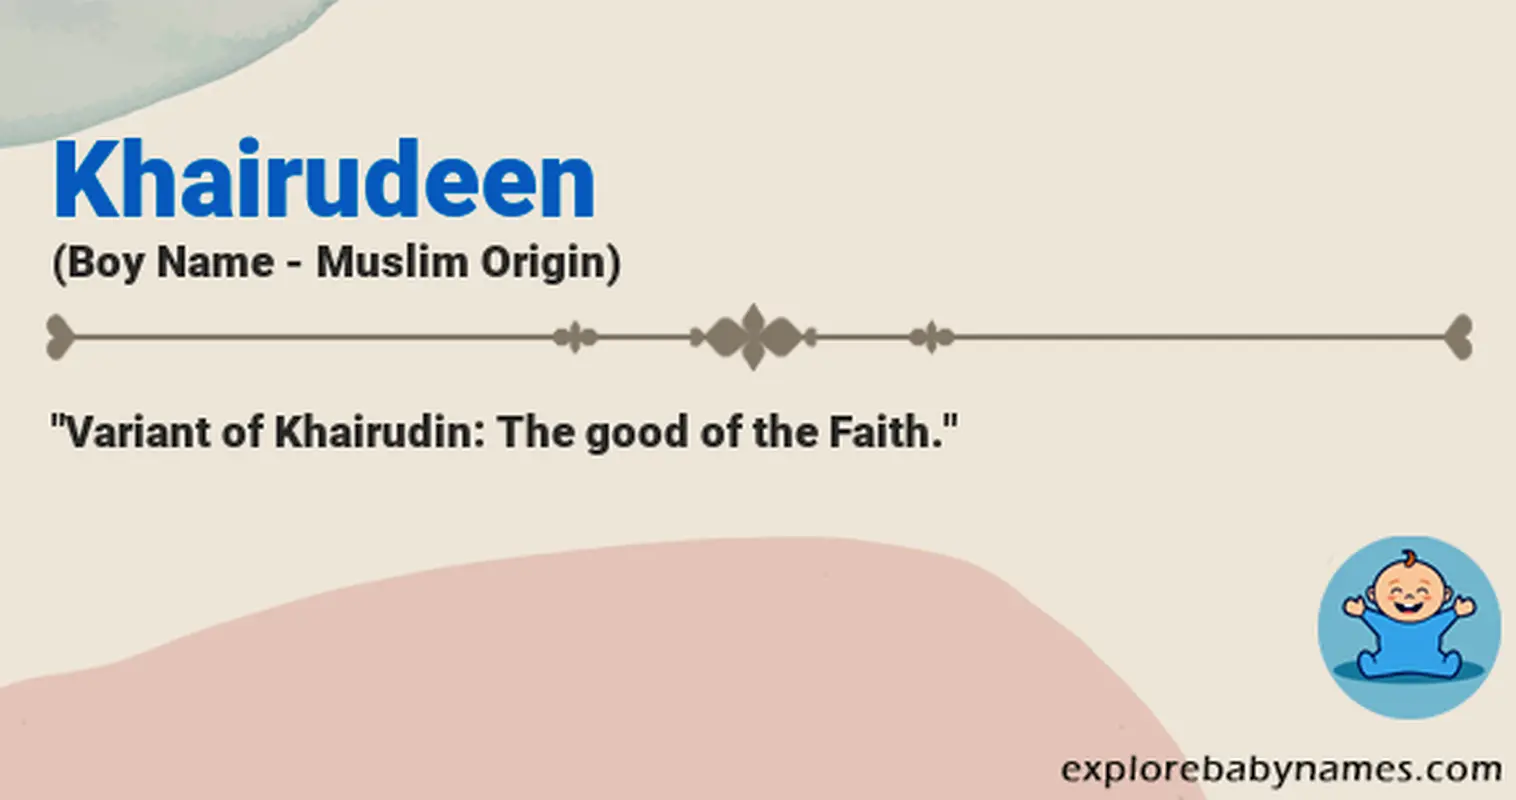 Meaning of Khairudeen